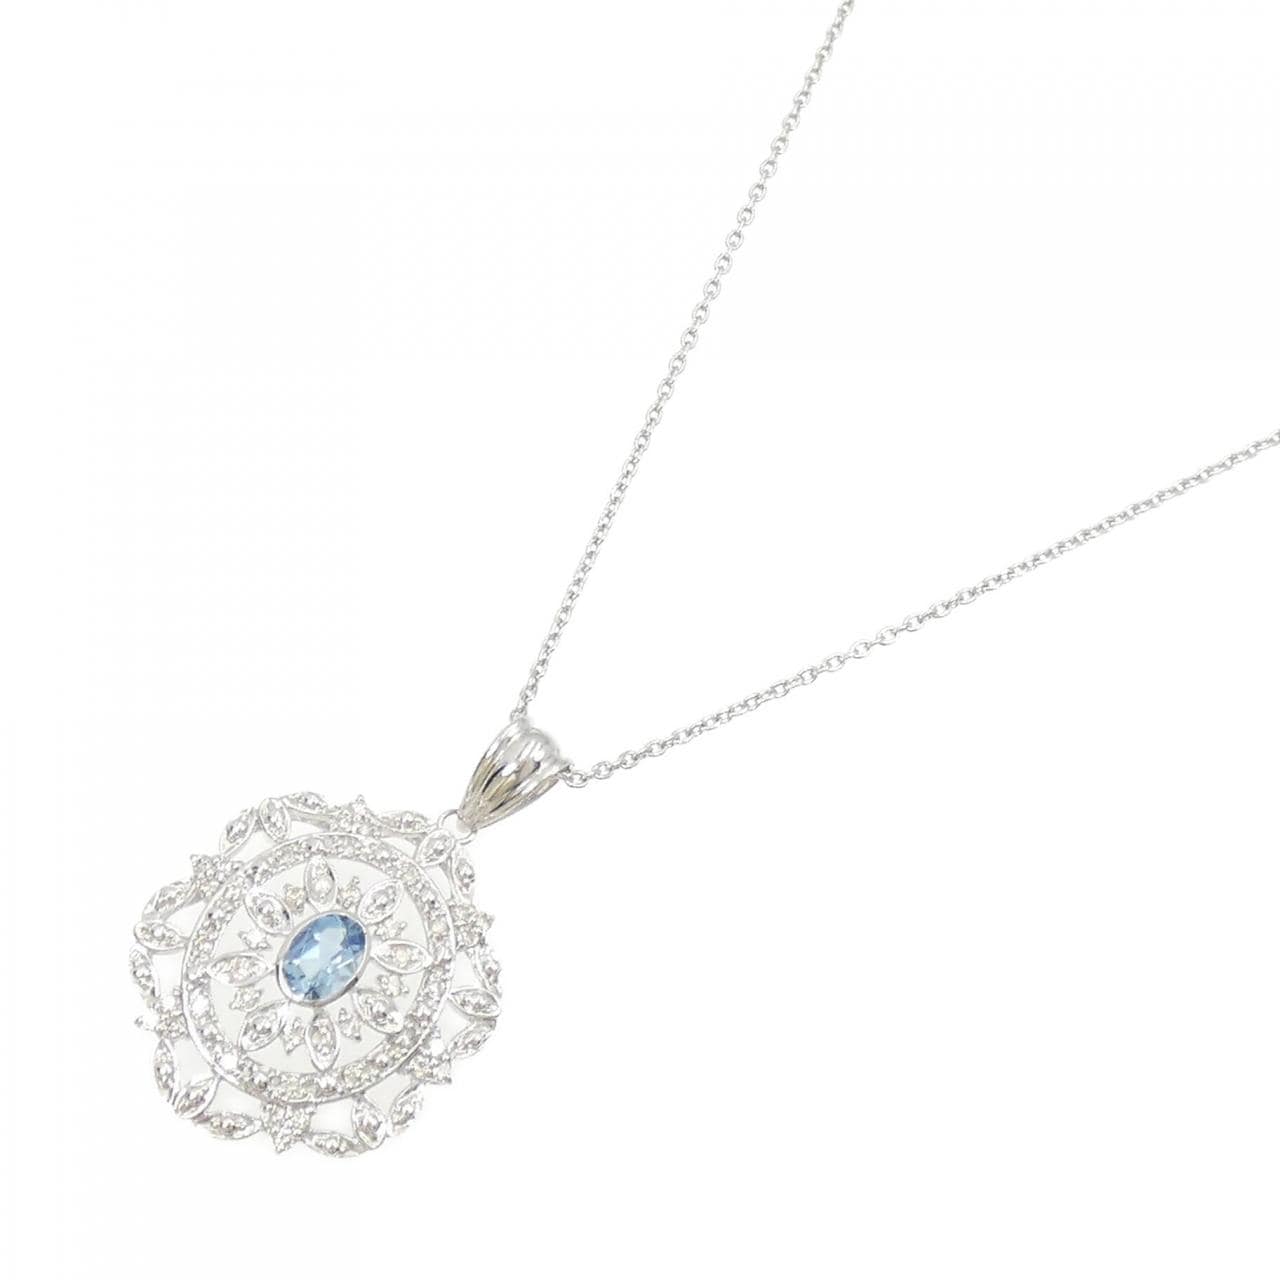 K18WG Aquamarine necklace 0.54CT